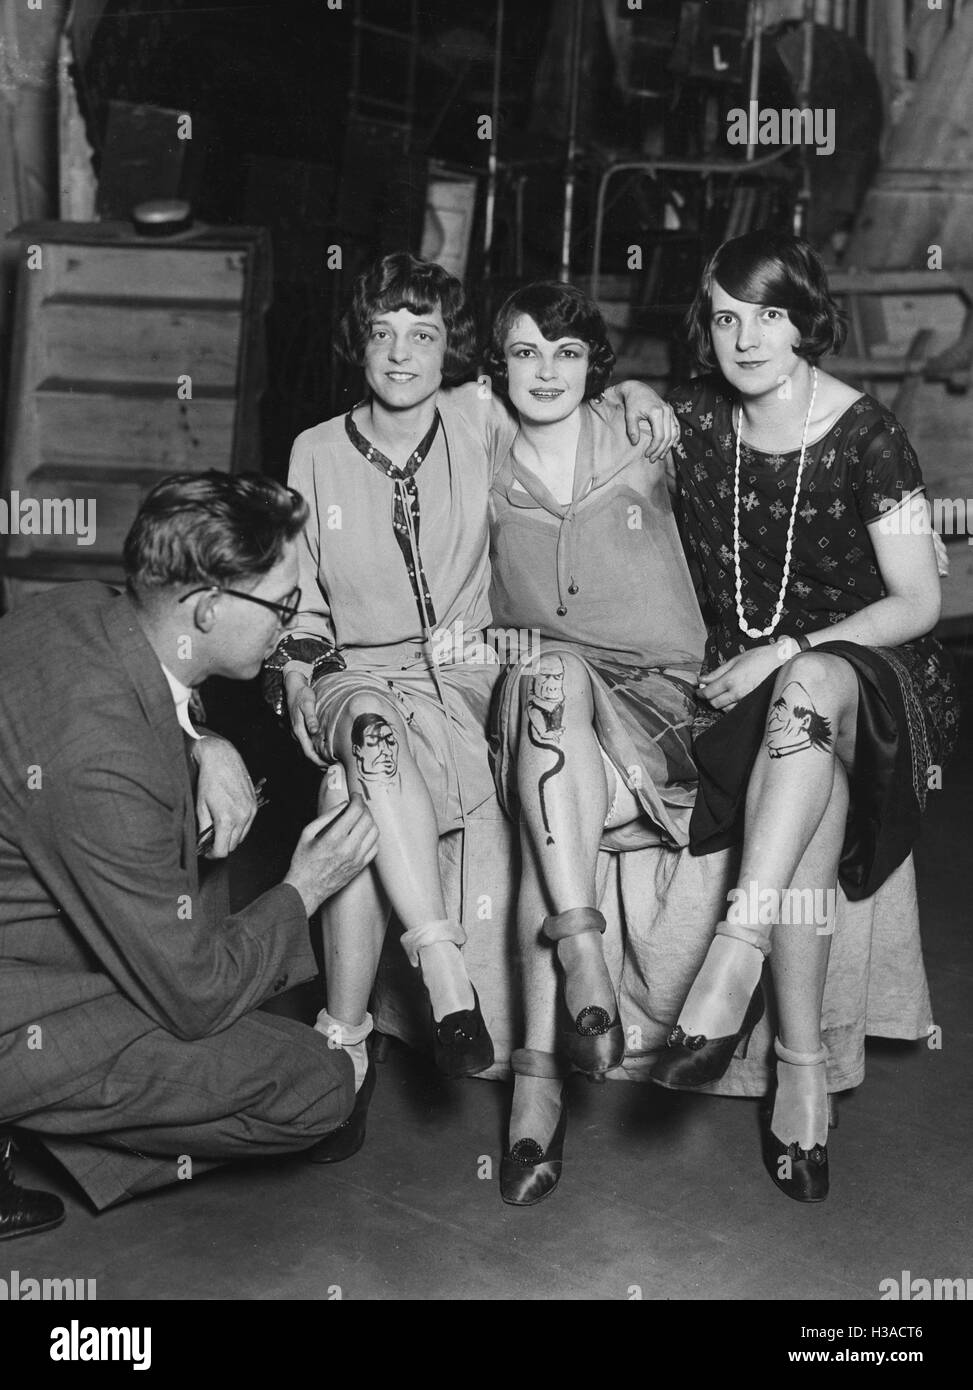 Hosiery fashion, 1928 Stock Photo - Alamy